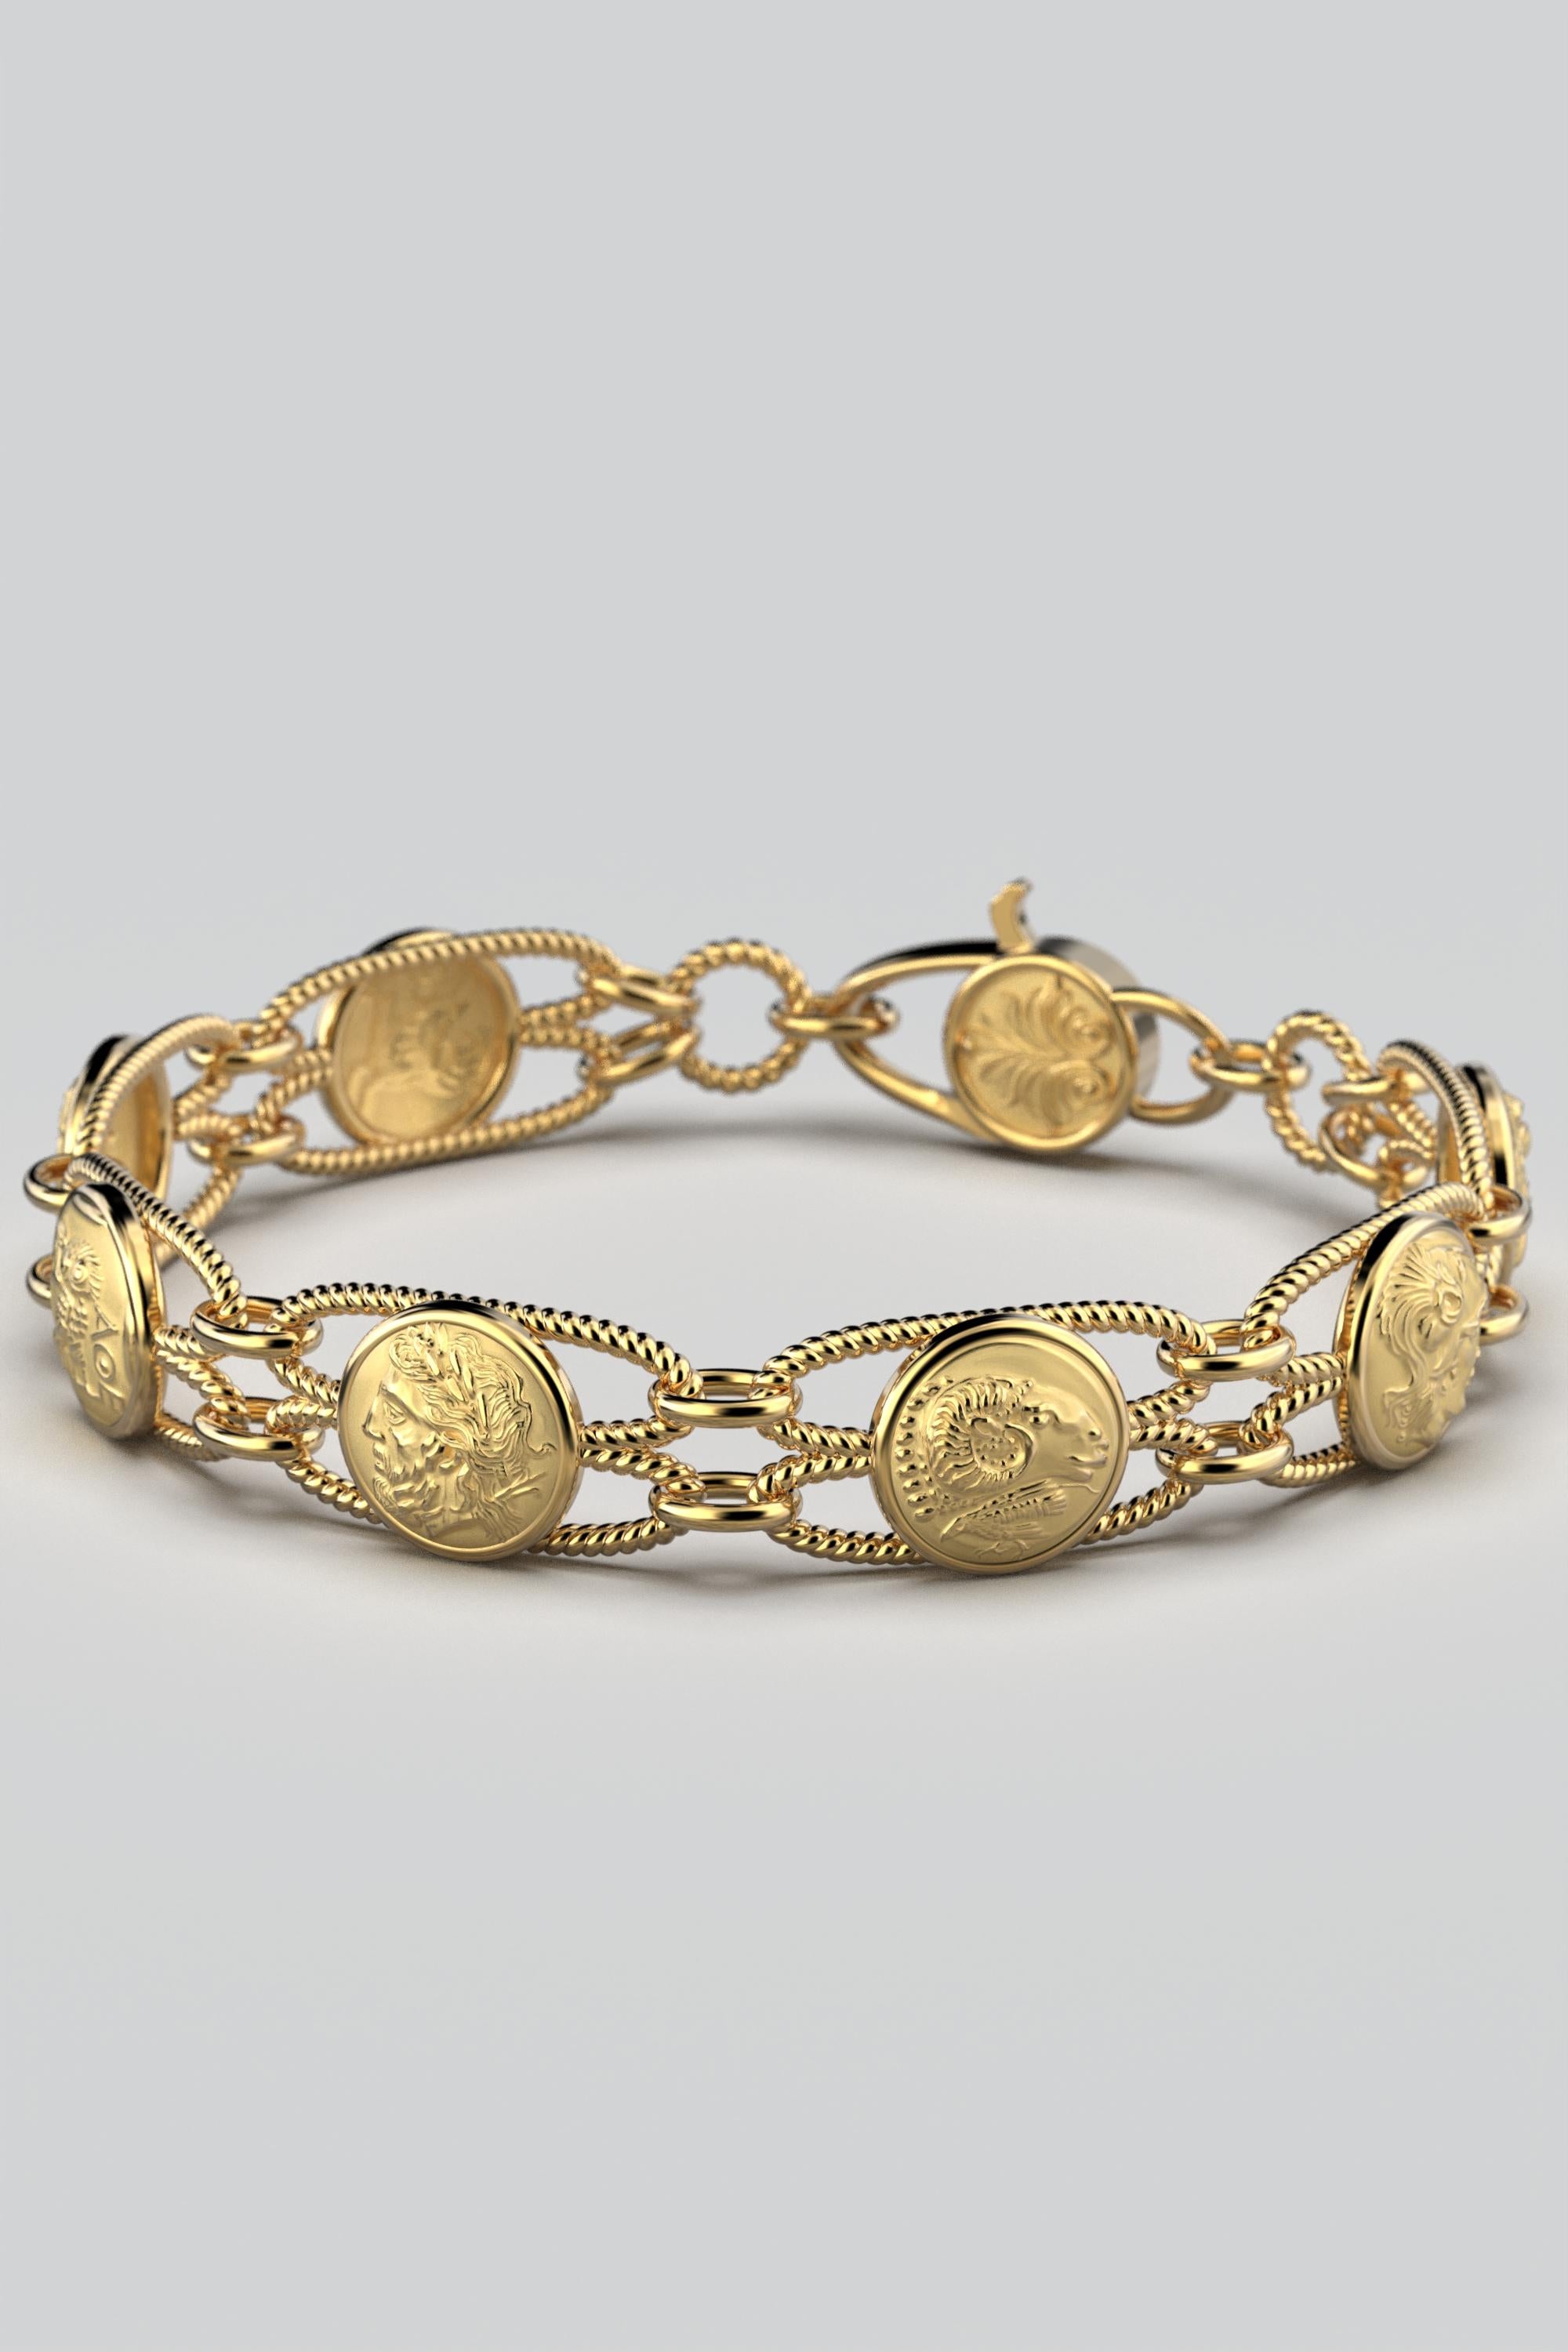 18k gold italian bracelet